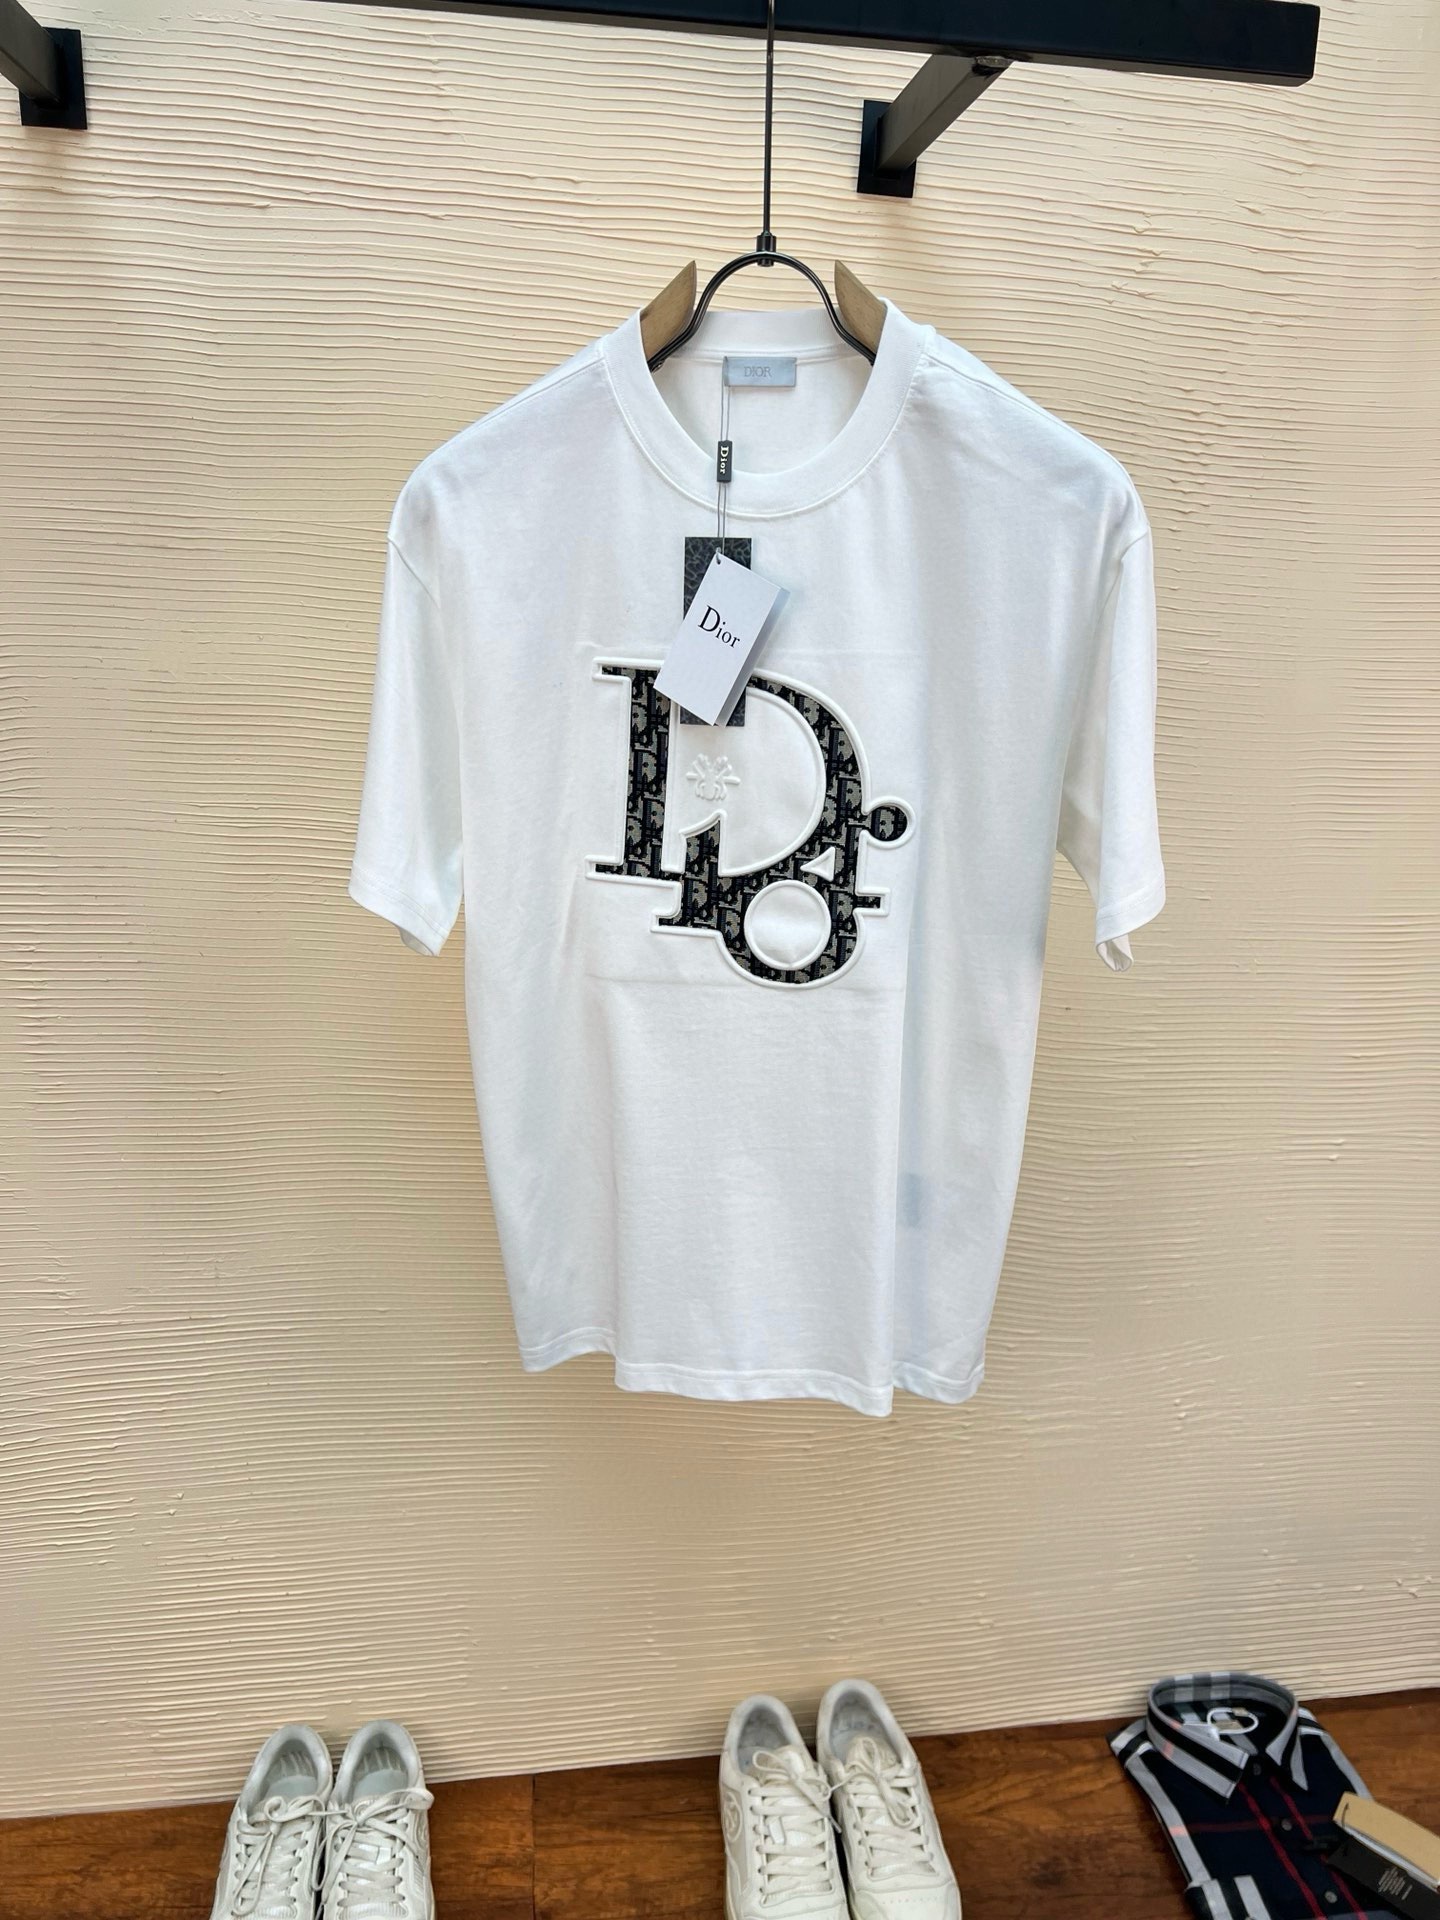 Dior Clothing T-Shirt Black White Unisex Cotton Double Yarn Short Sleeve